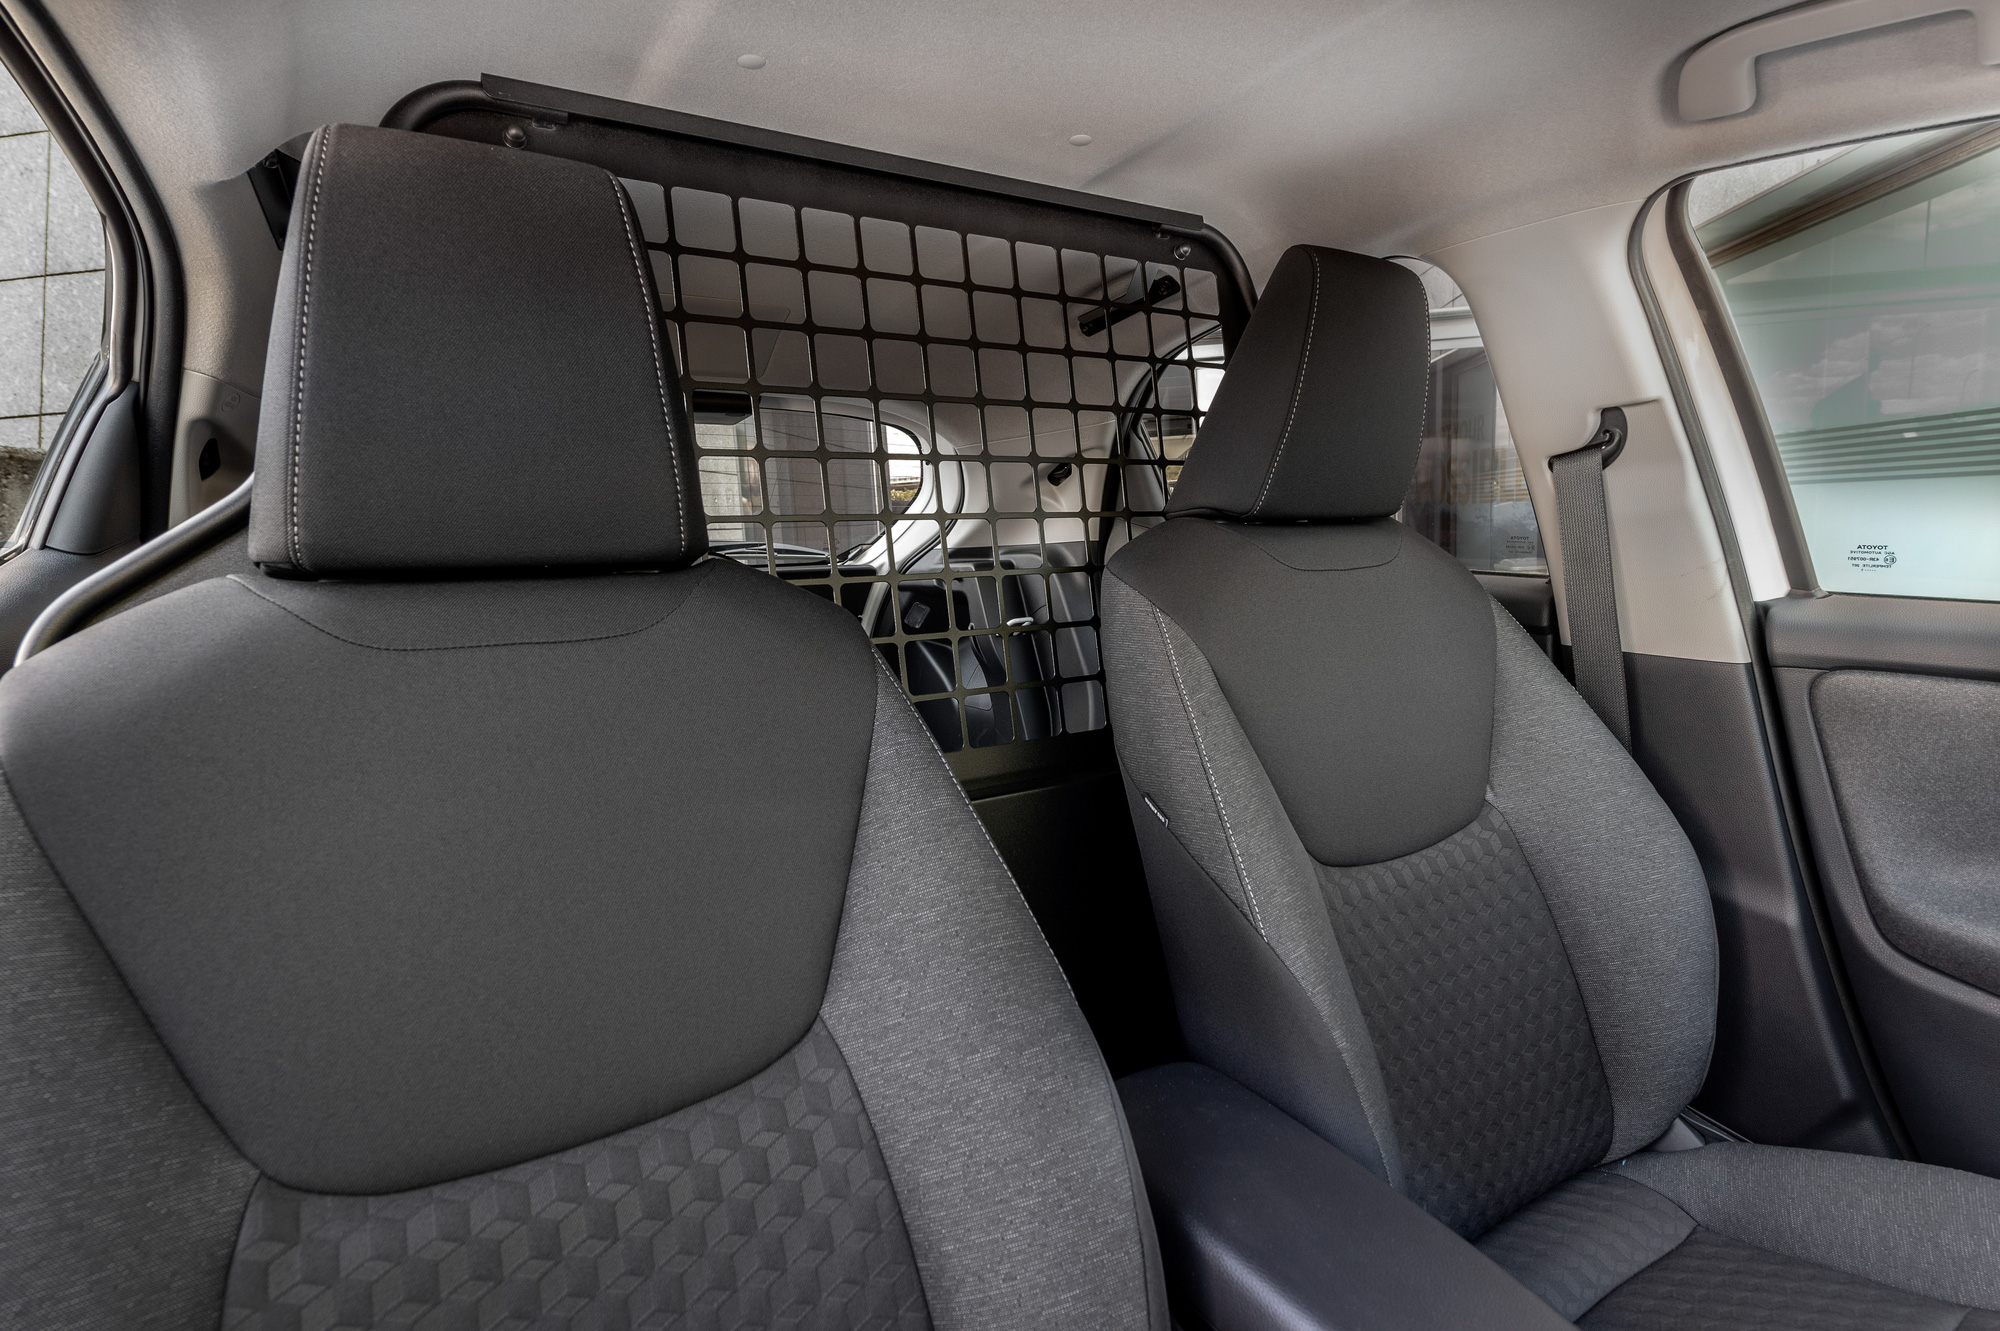 Ra mắt Toyota Yaris ECOVan - Xe dịch vụ giá quy đổi từ 640 triệu, bỏ ghế sau, rộng gần gấp 3 bản thường - Ảnh 3.